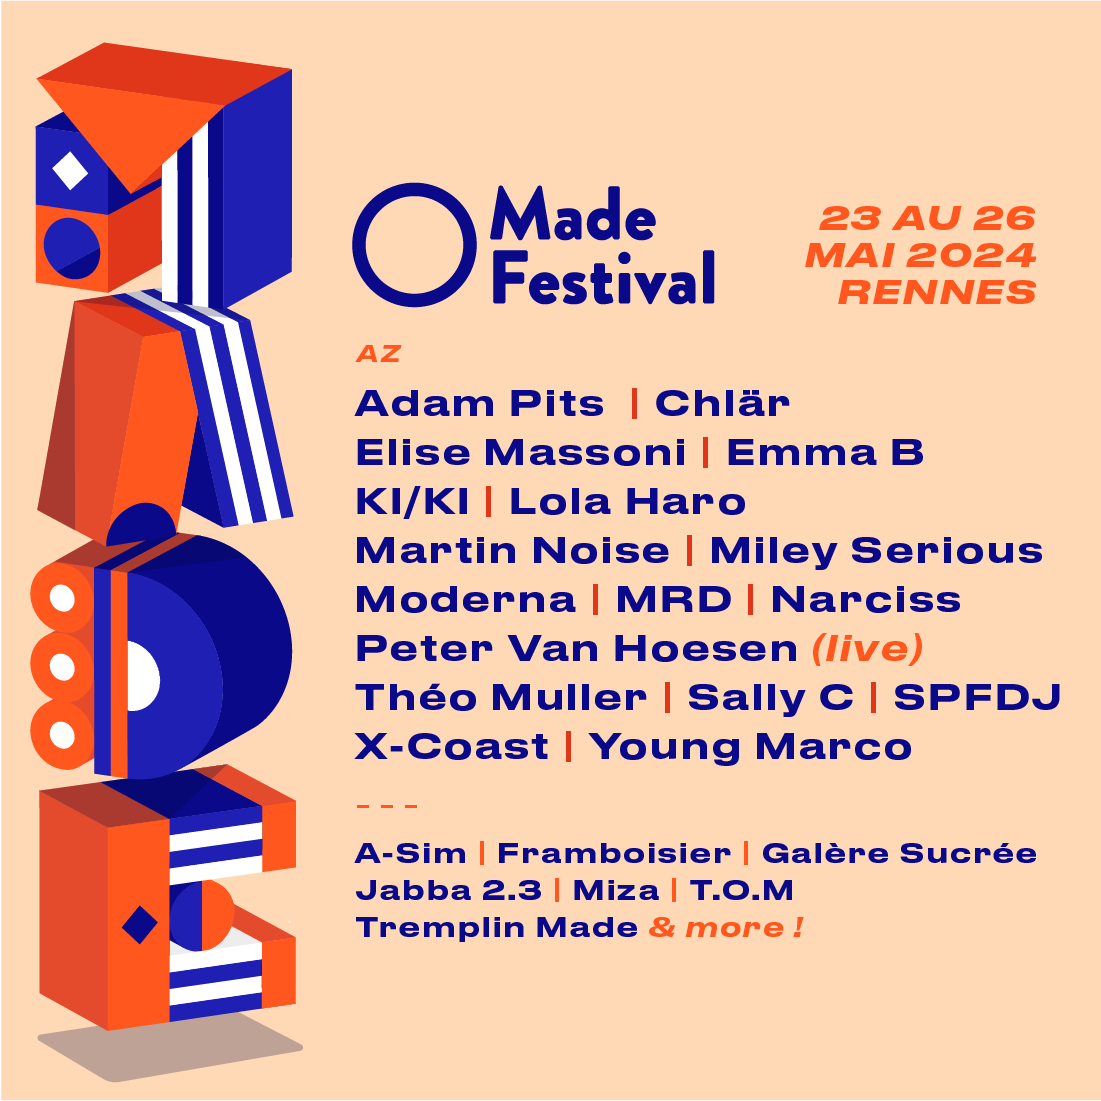 Made Festival 2024 Rennes - Página trasera